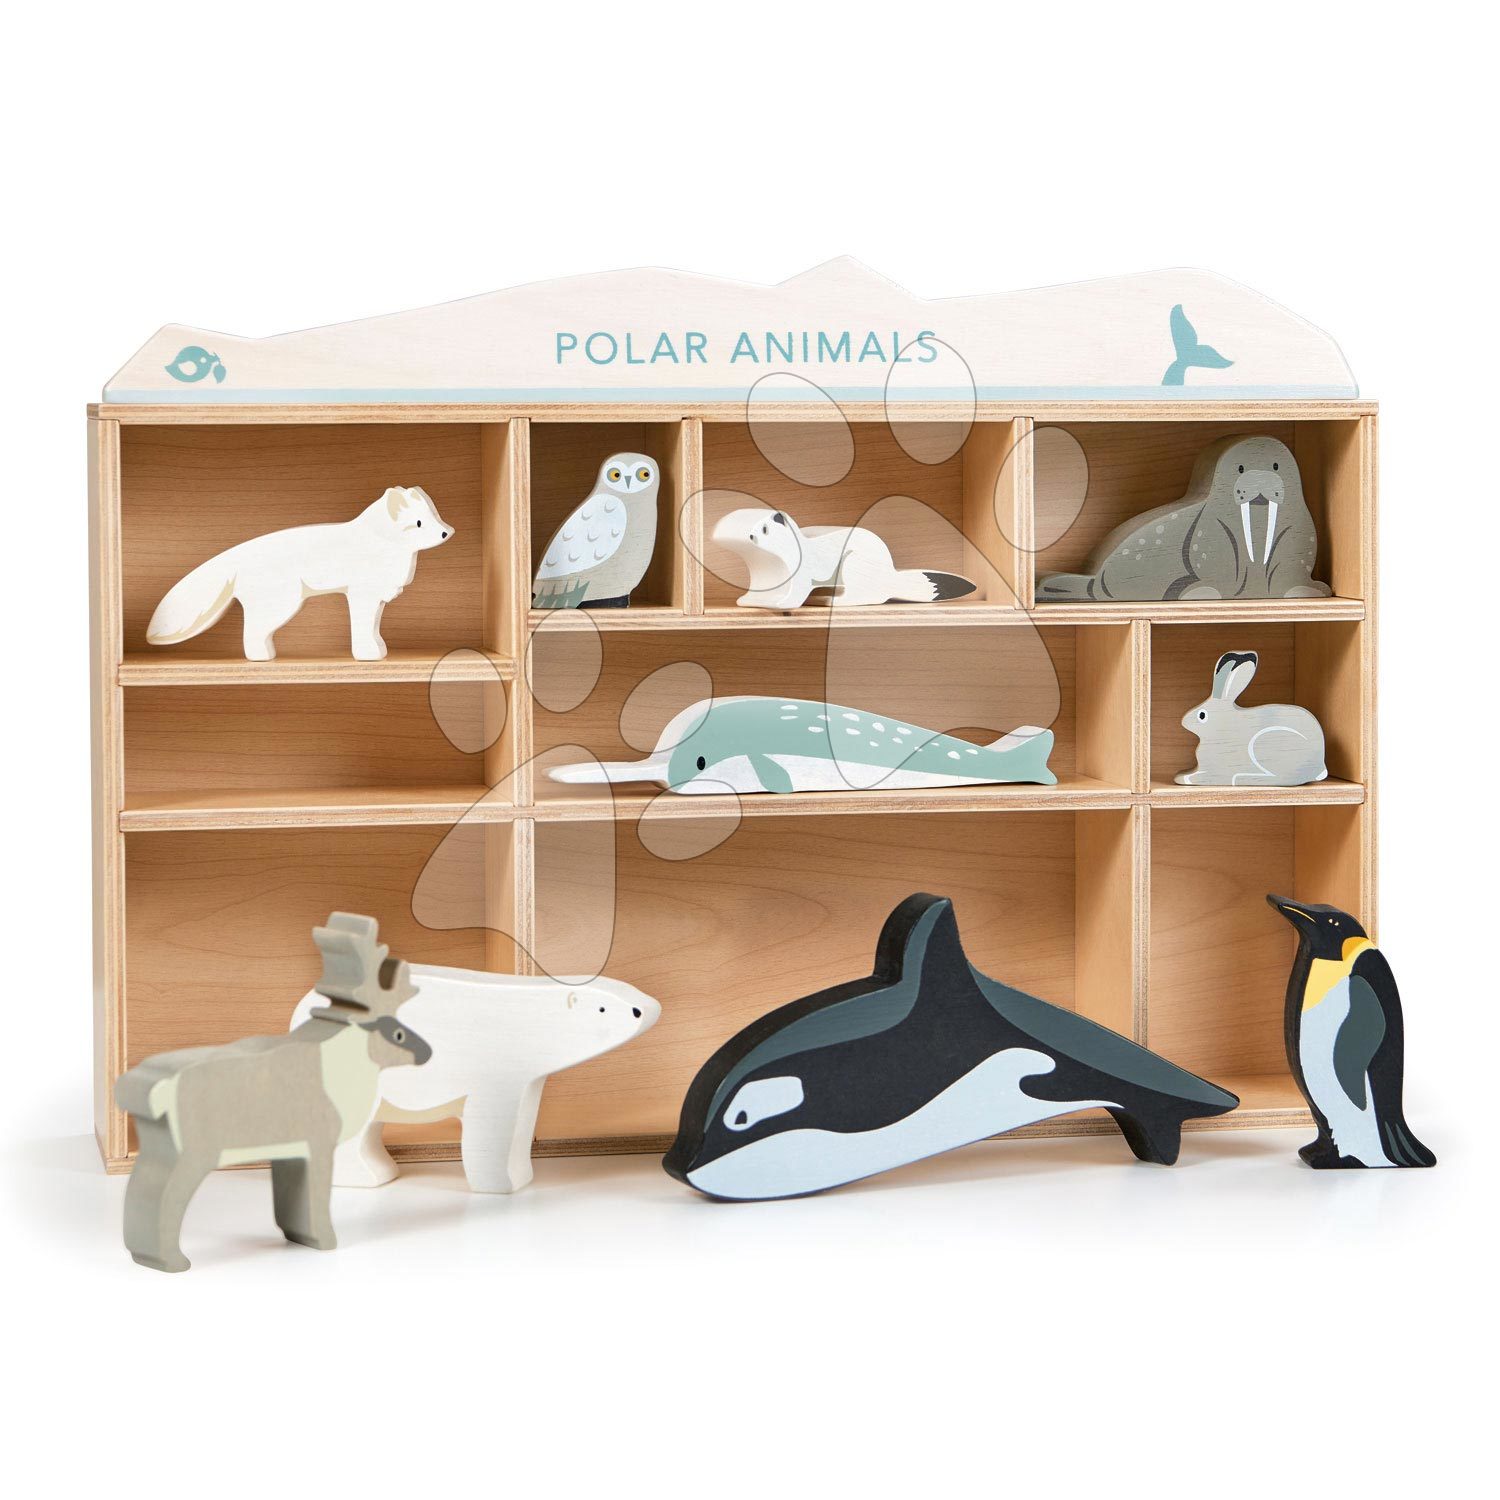 Drevené polárne zvieratká na poličke Polar Animals Shelf Tender Leaf Toys 10 druhov ľadových živočíchov